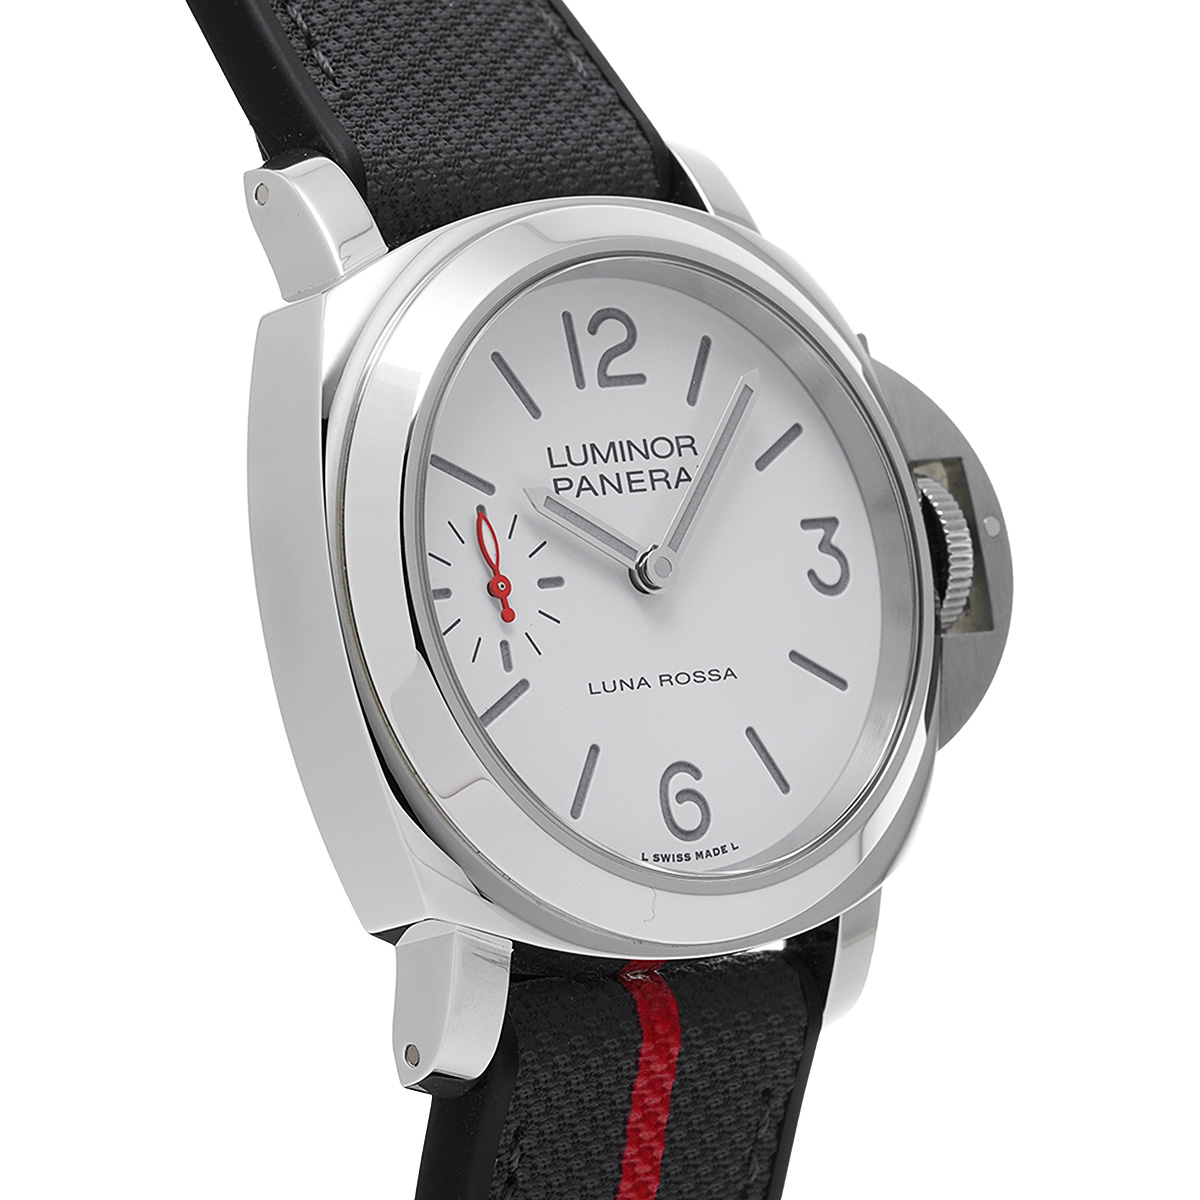 パネライ PANERAI PAM01306 Y番(2022年製造) ホワイト メンズ 腕時計